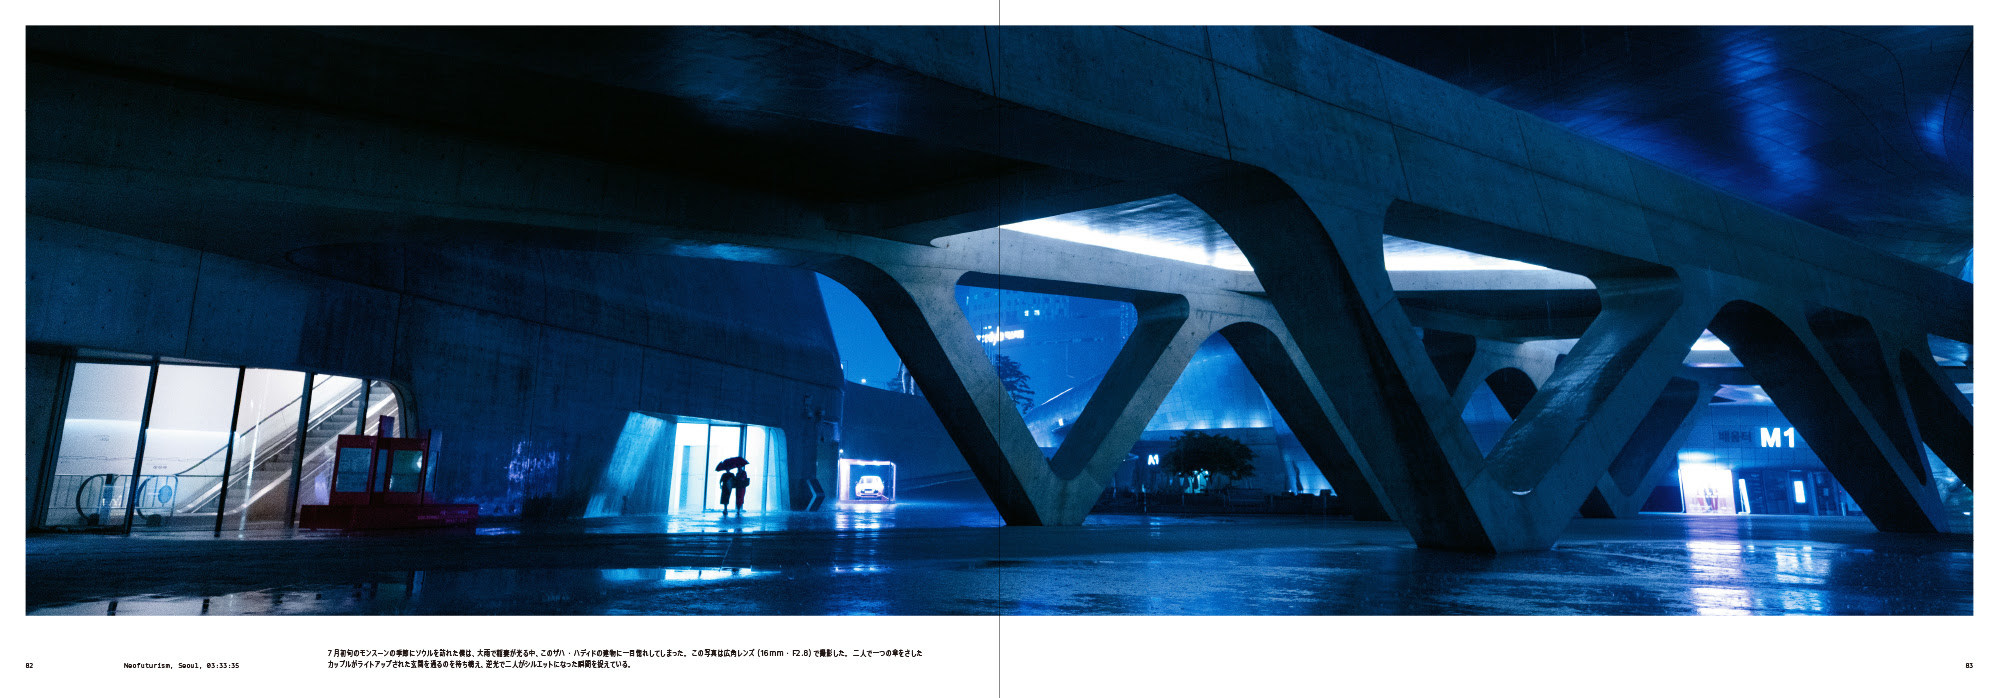 写真集『アフター・ダーク リアム・ウォン-午前零時からの街- 』